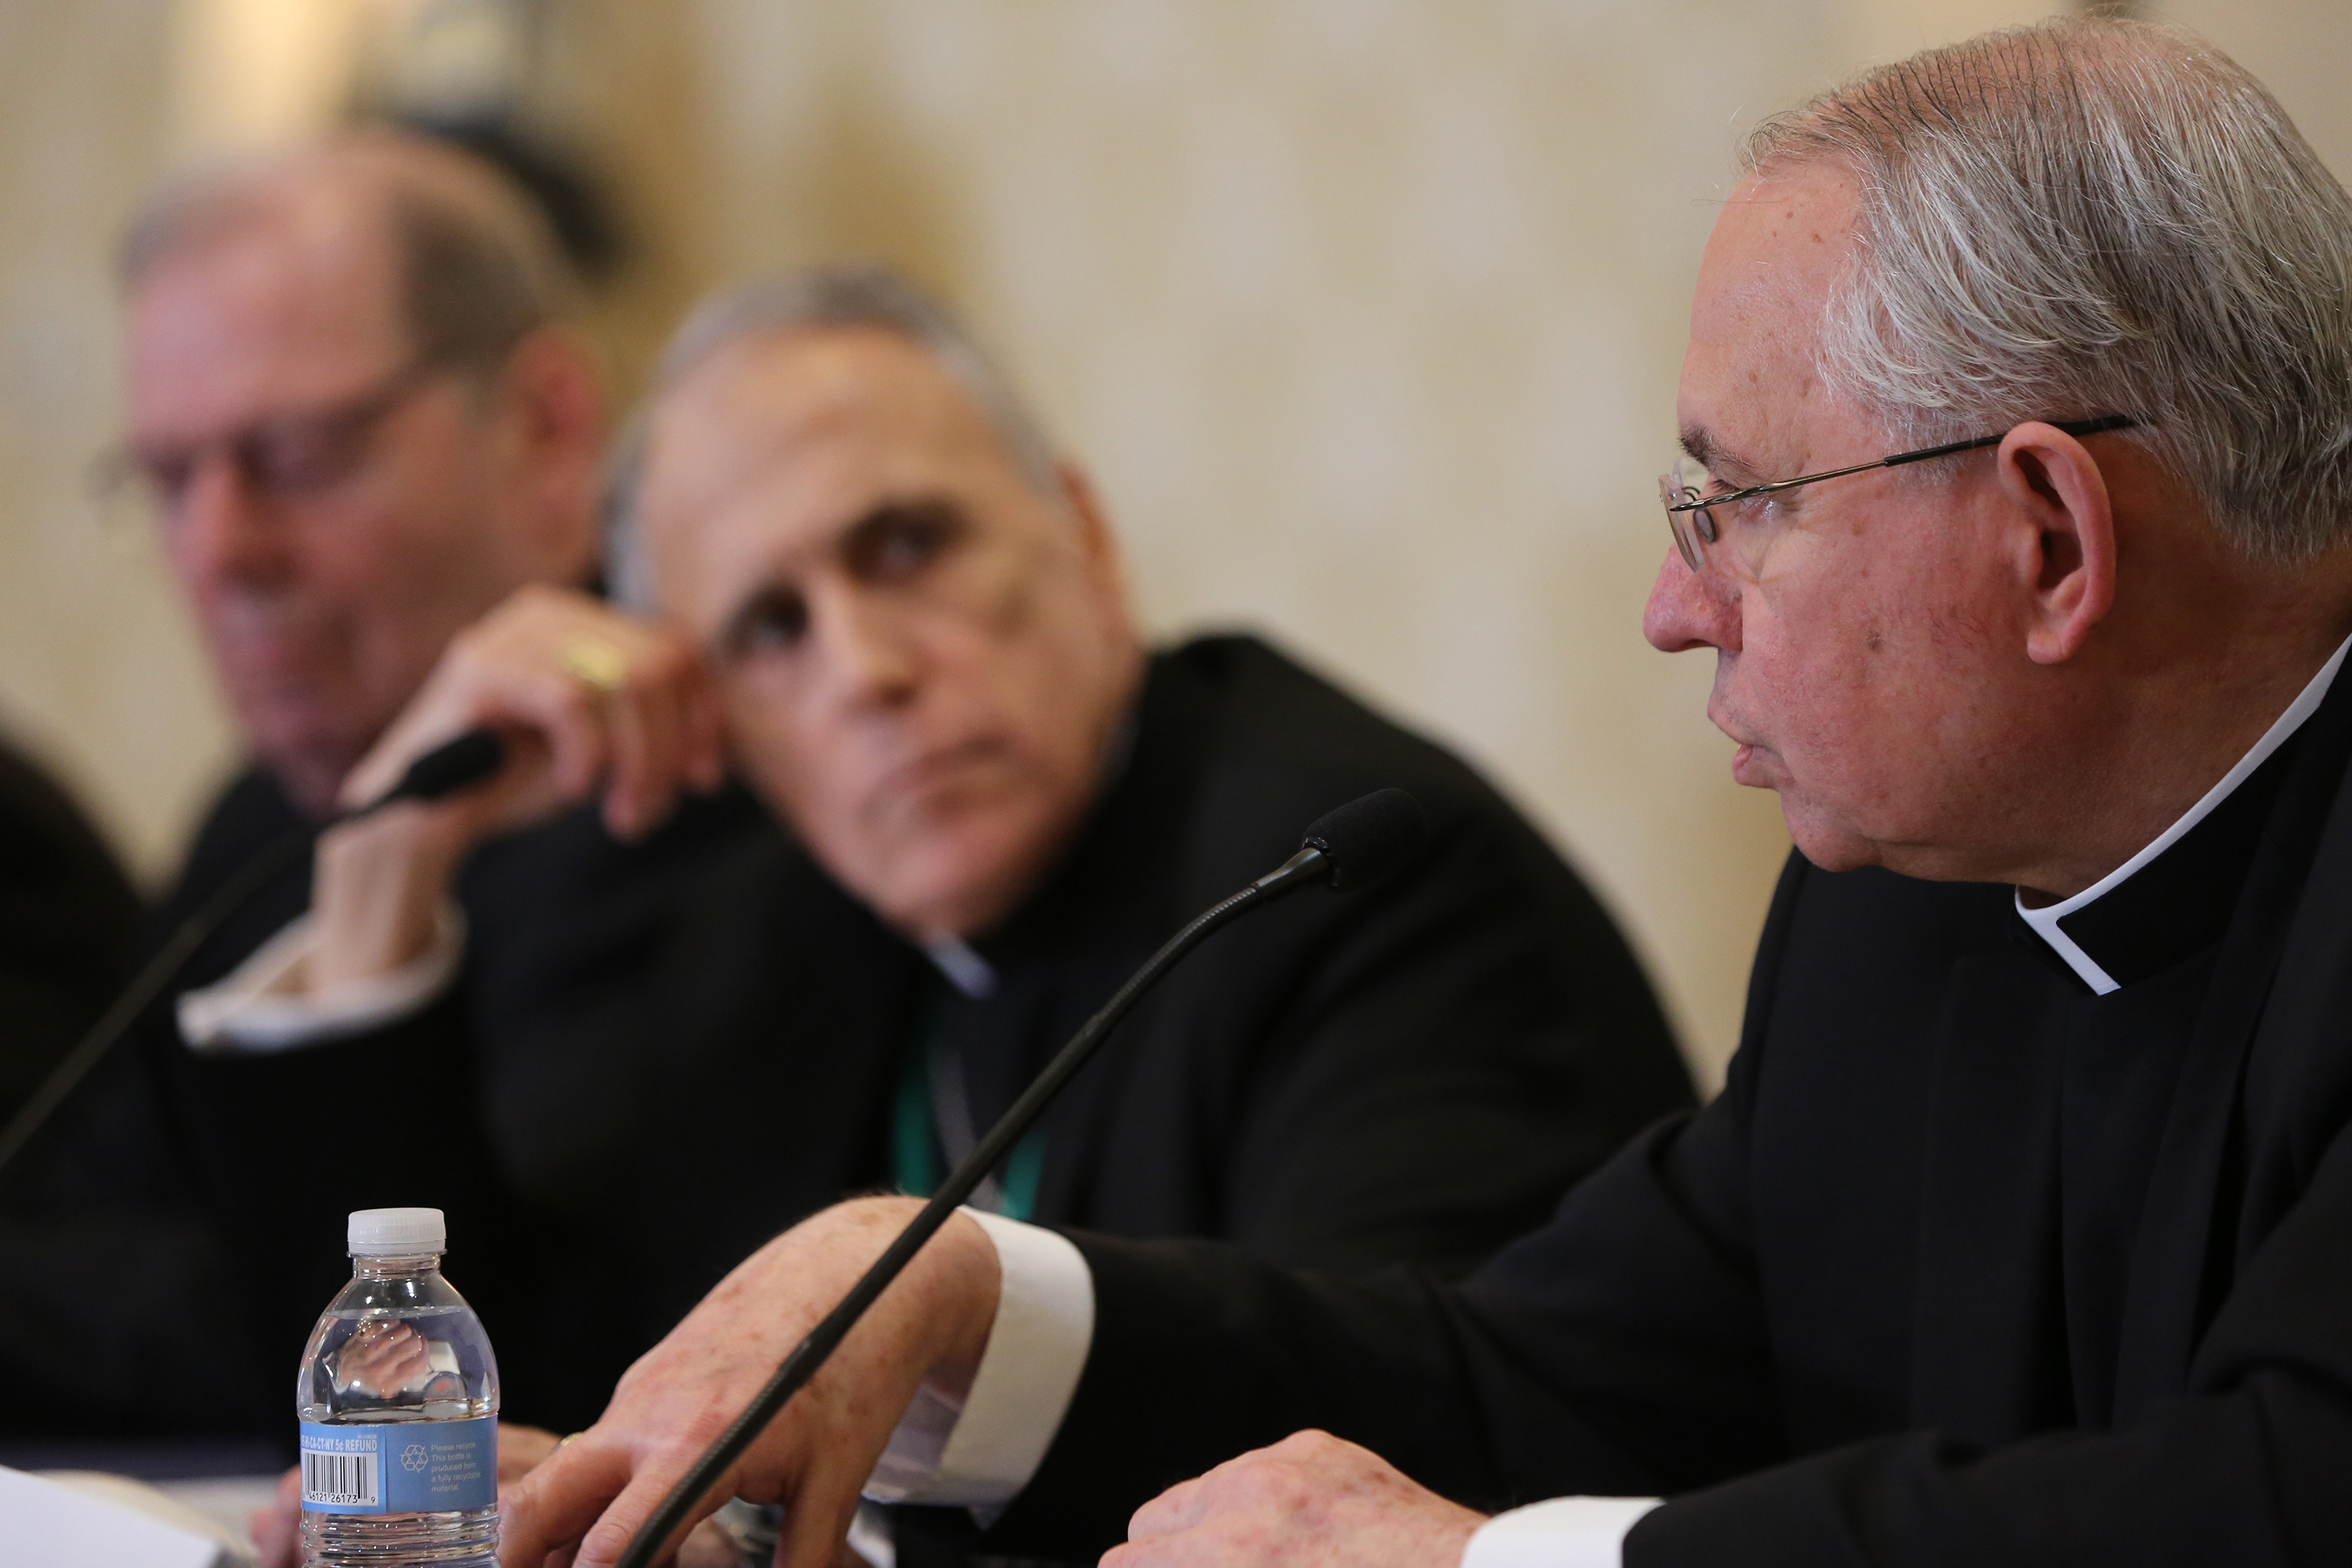 Response to church abuse crisis looms large at US bishops' spring meeting